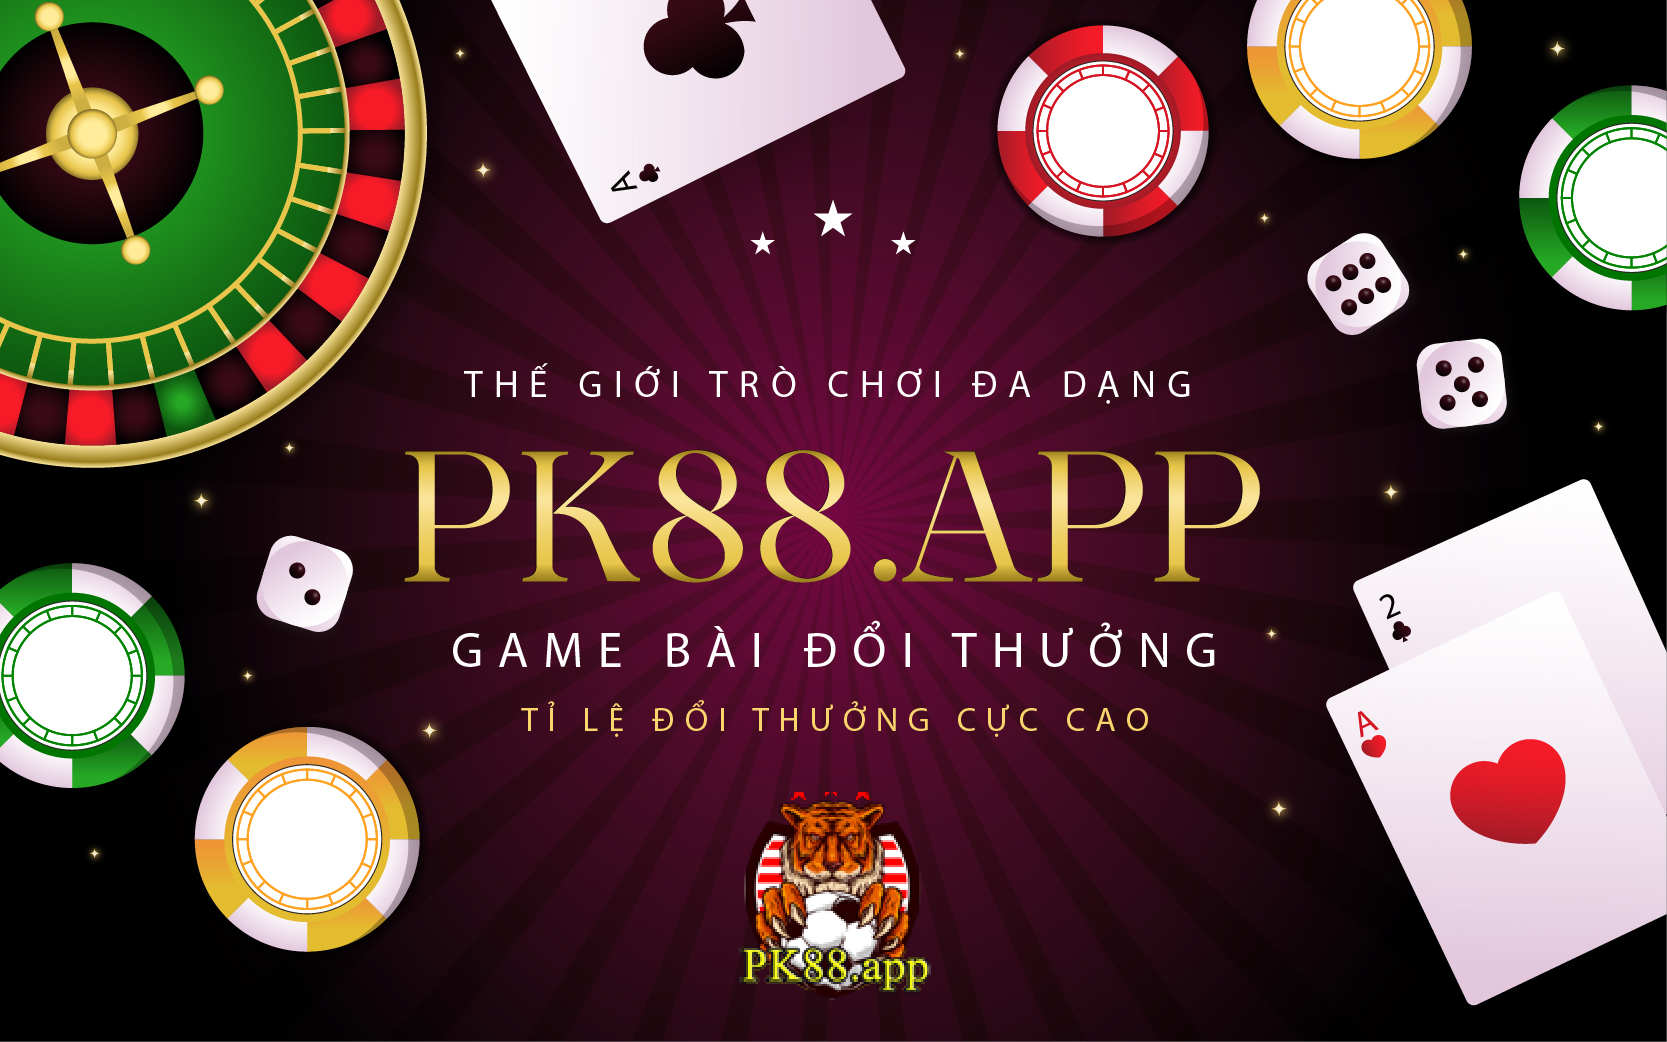 cổng game pk88.app